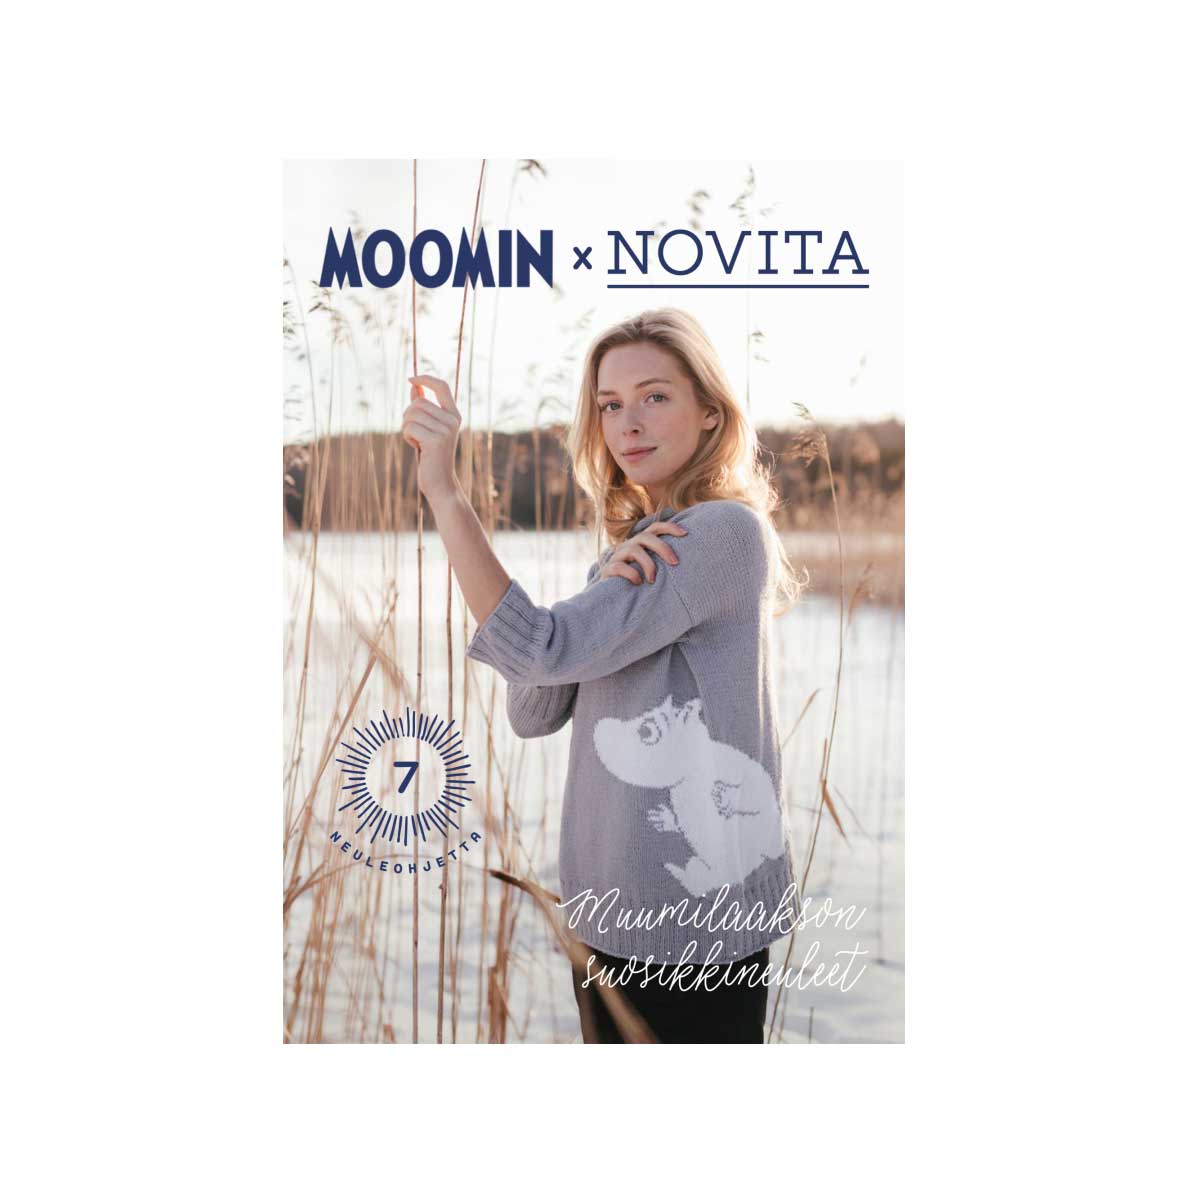  Magazine Moomin x Novita - Muumilaakson suosikkineuleet, 2019 (in Finnish)